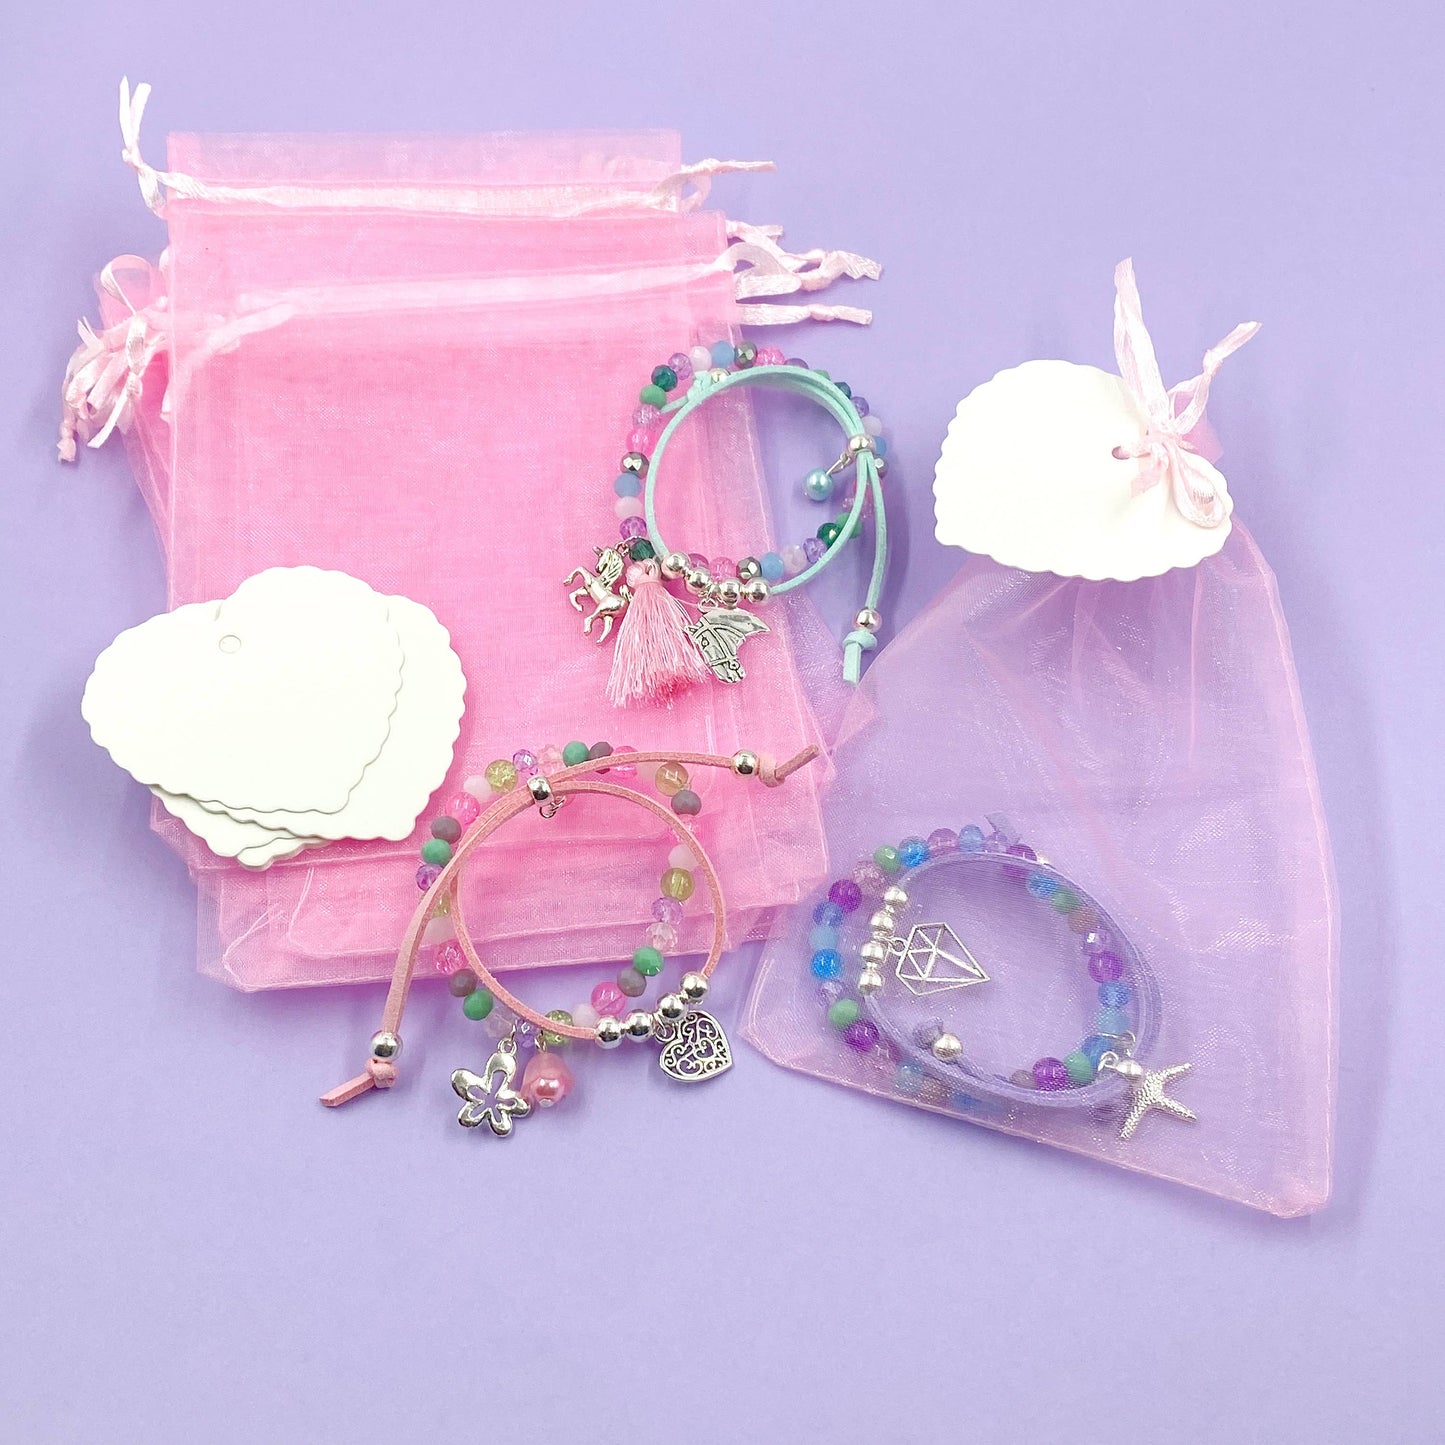 Children's Bracelet Making Party Kit